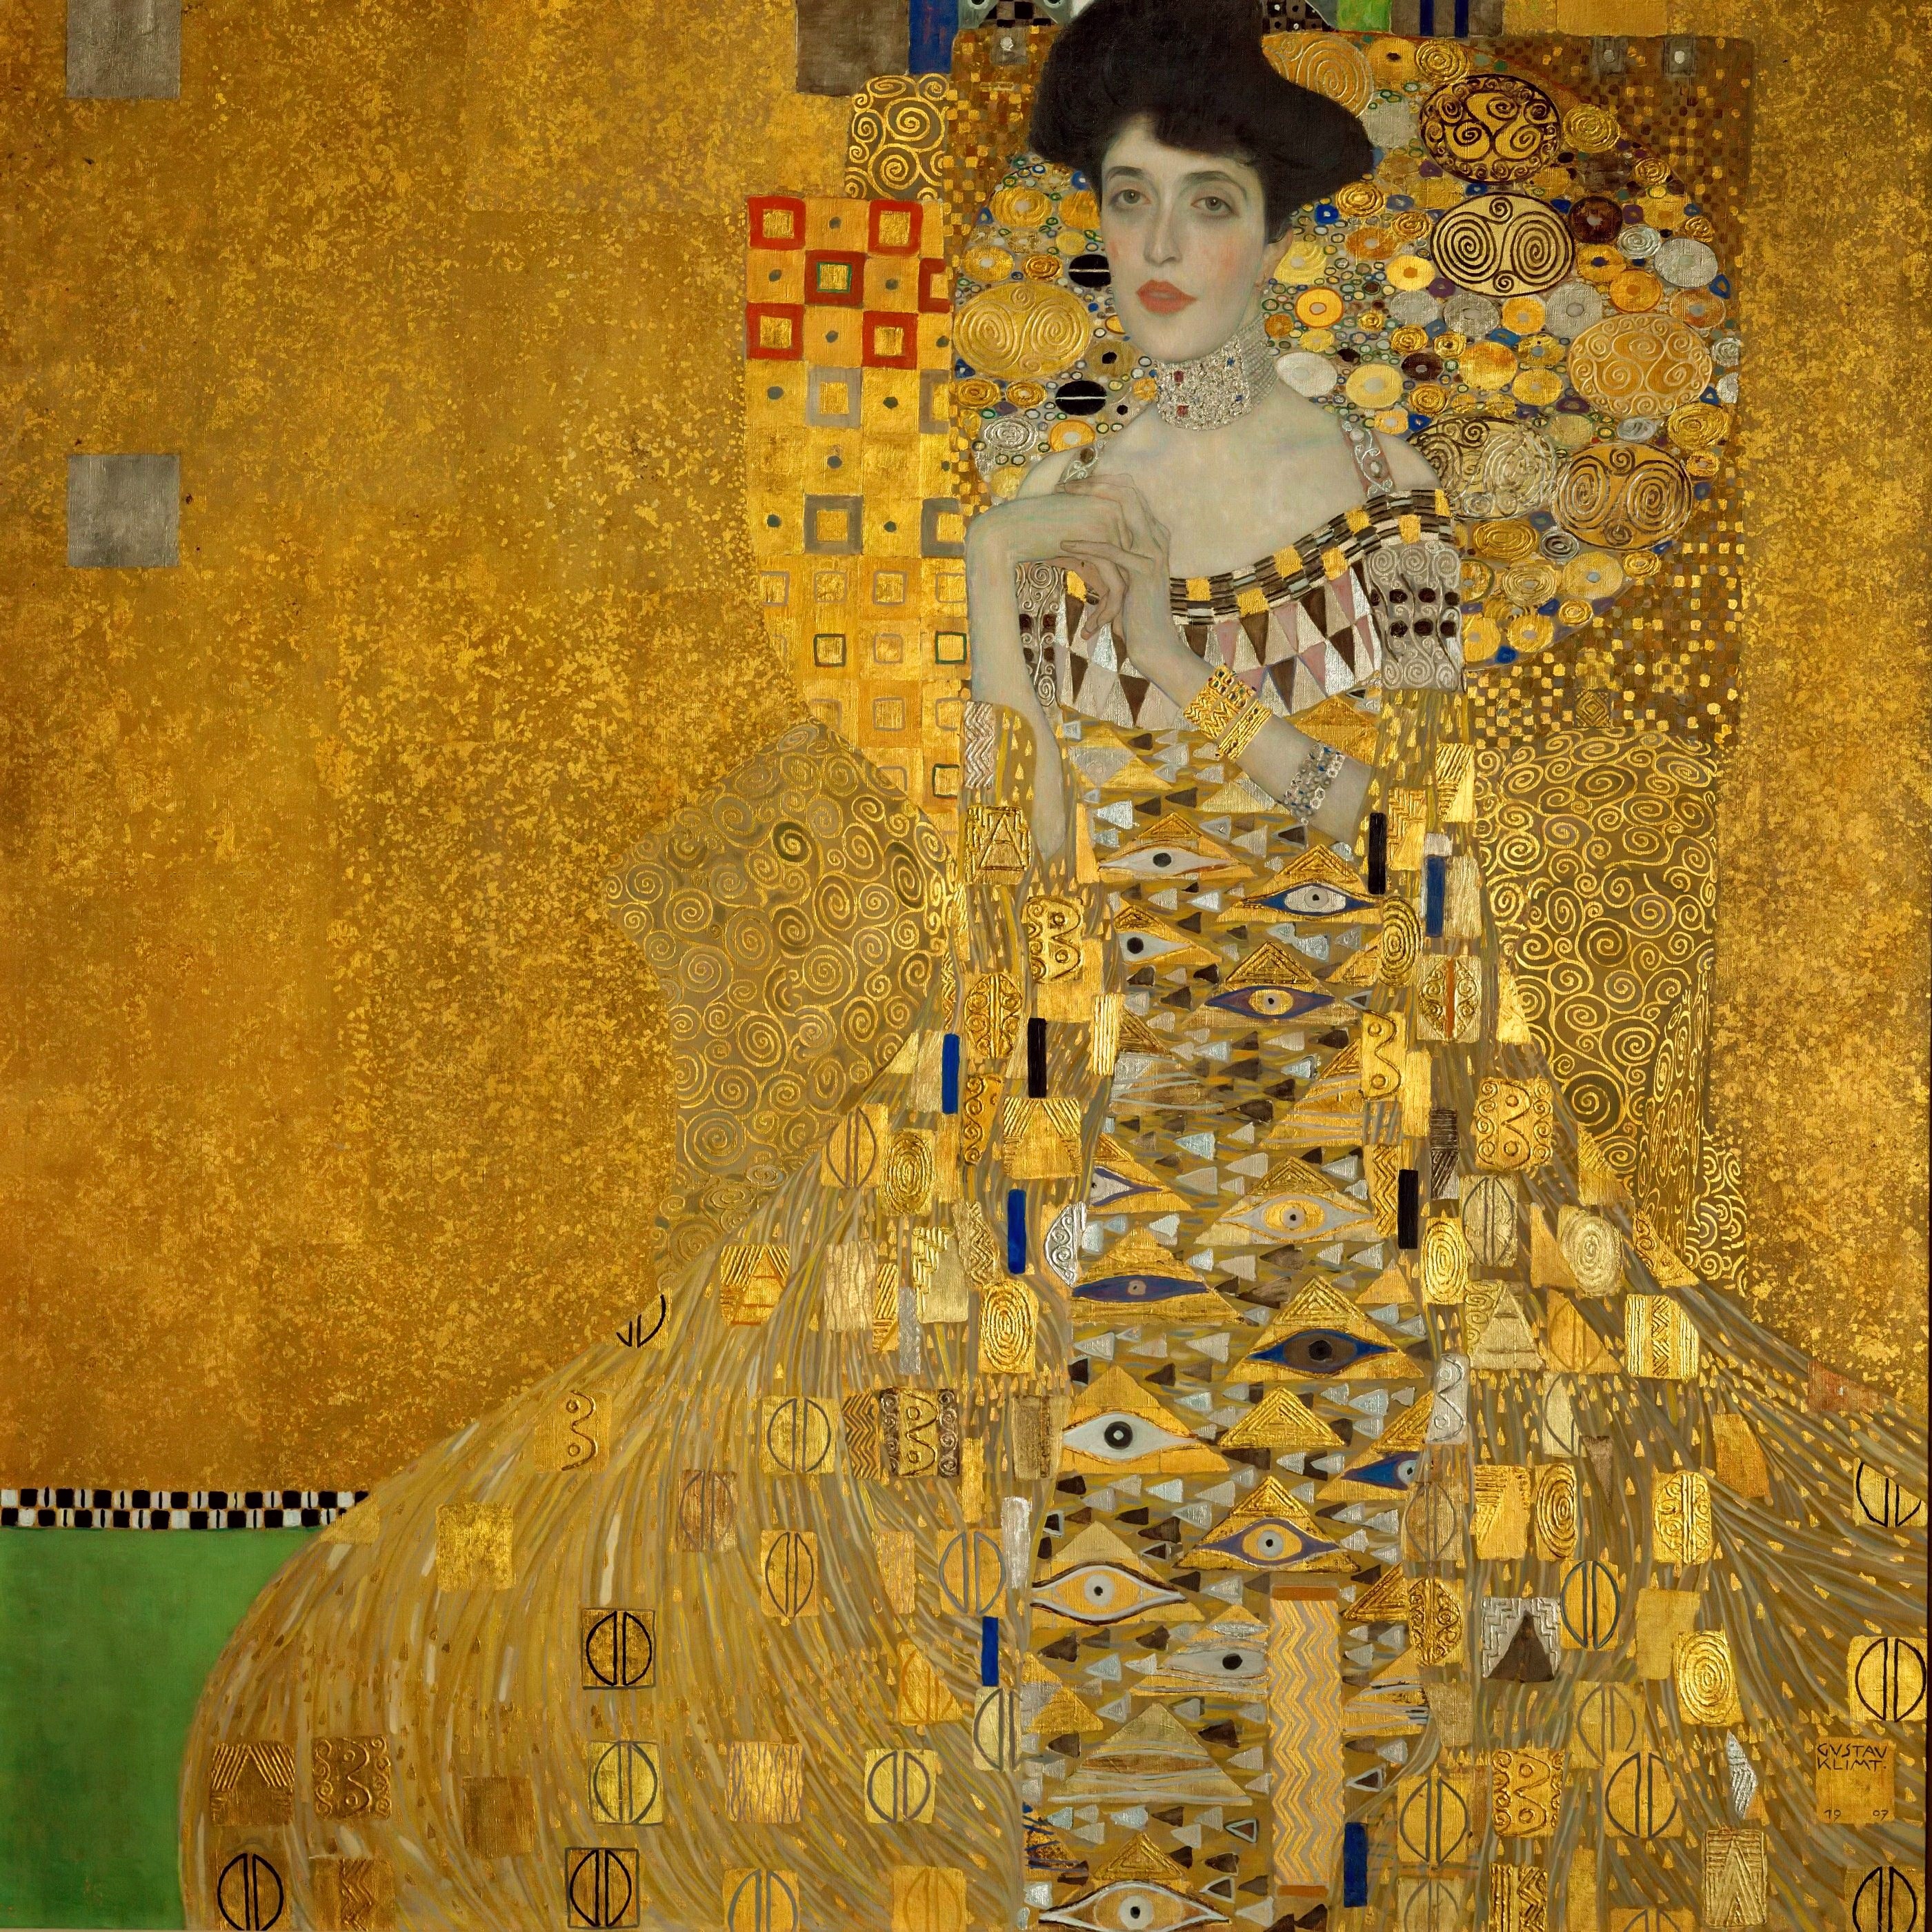 阿黛尔·布洛赫-鲍尔一世画像 by 古斯塔夫· 克林姆特画 - 1907 - 140 × 140 厘米 